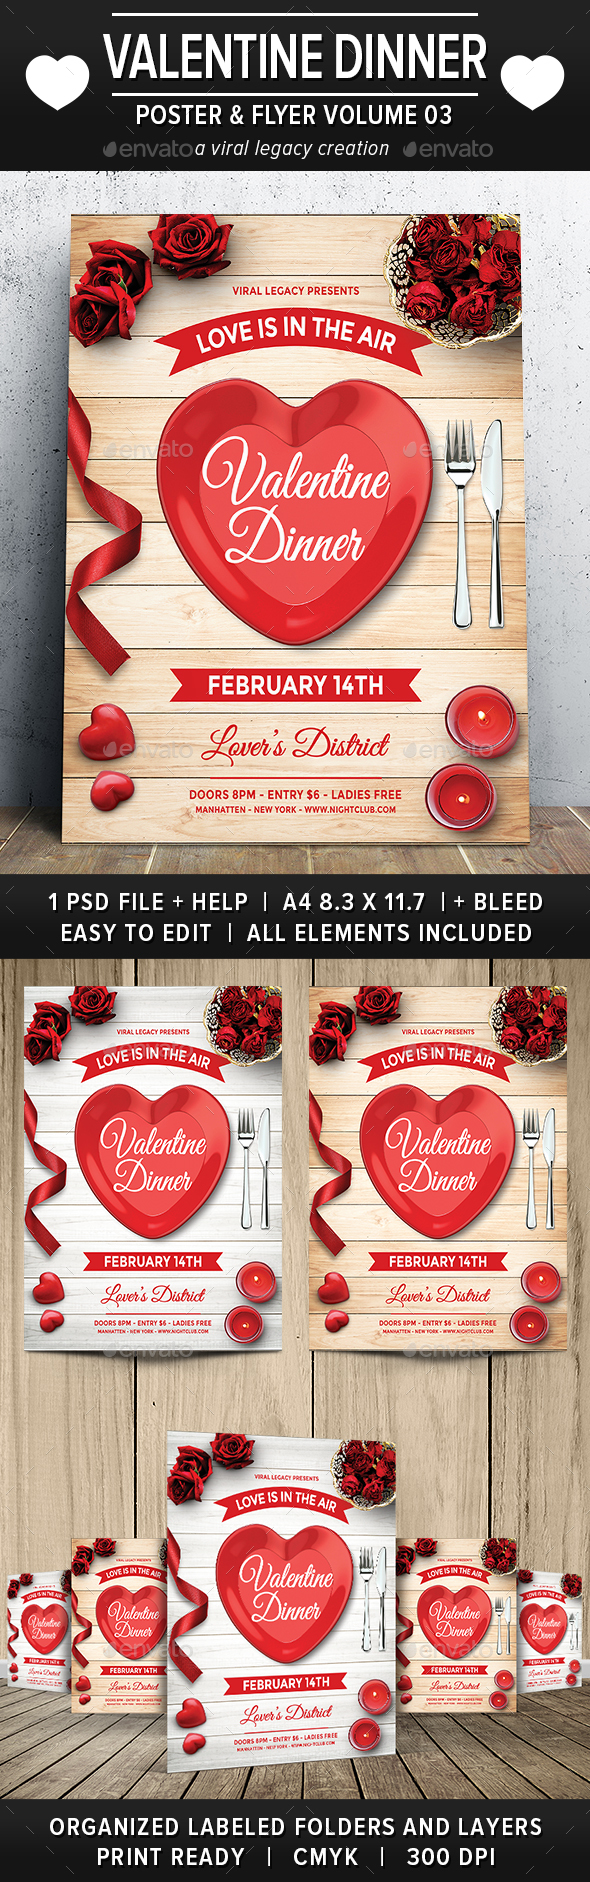 Valentine Dinner Poster / Flyer V03